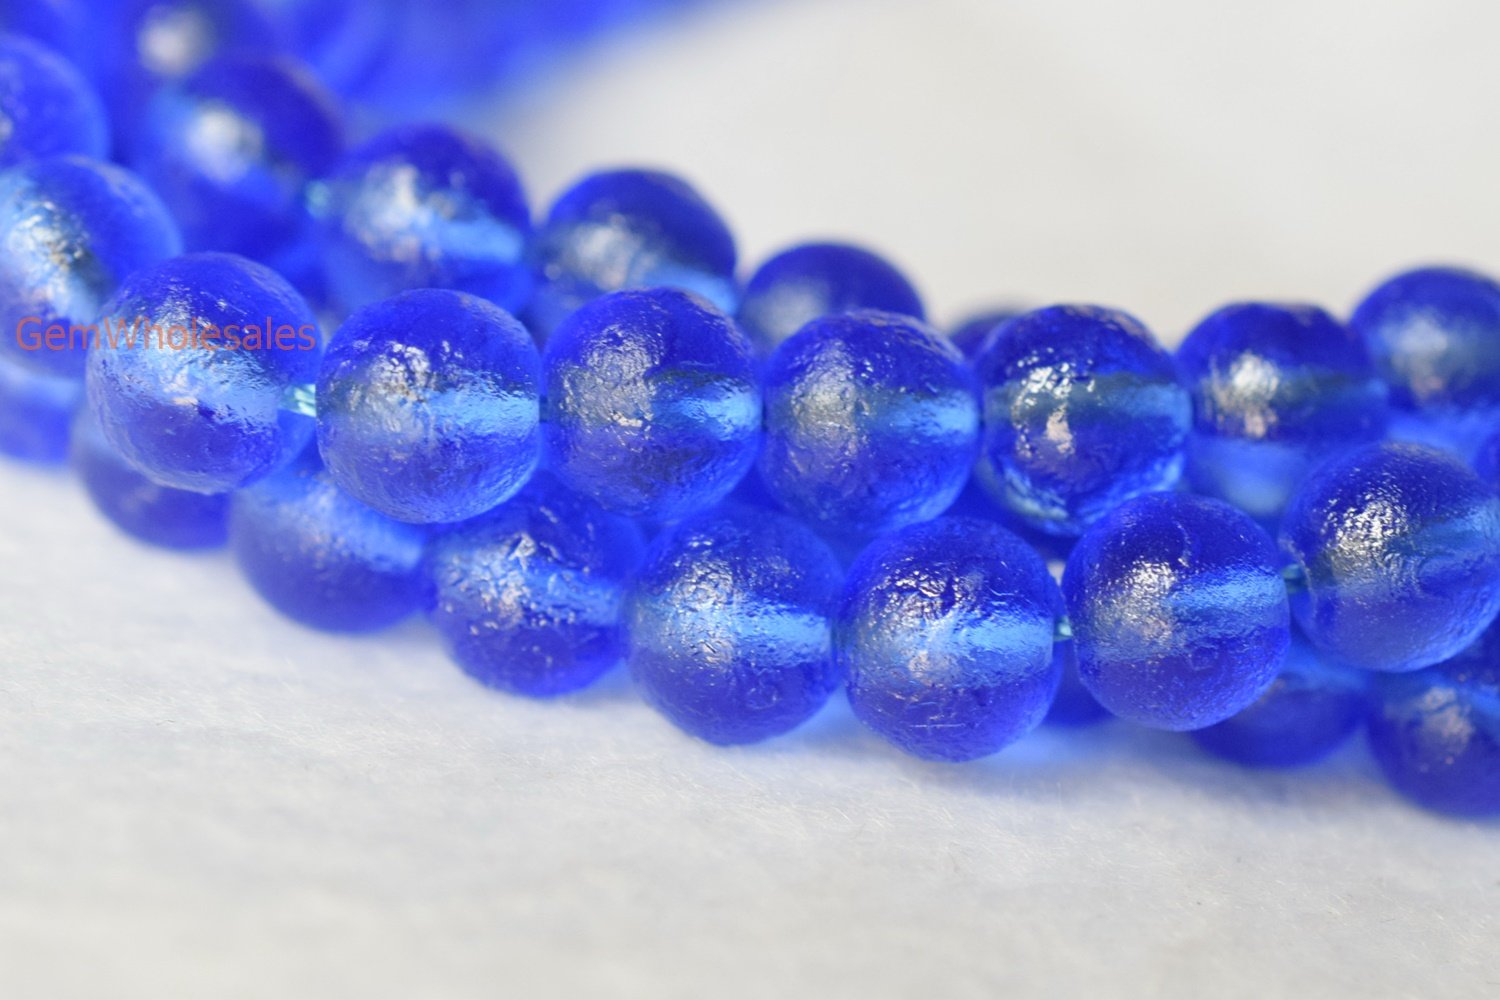 Glass - Round- beads supplier